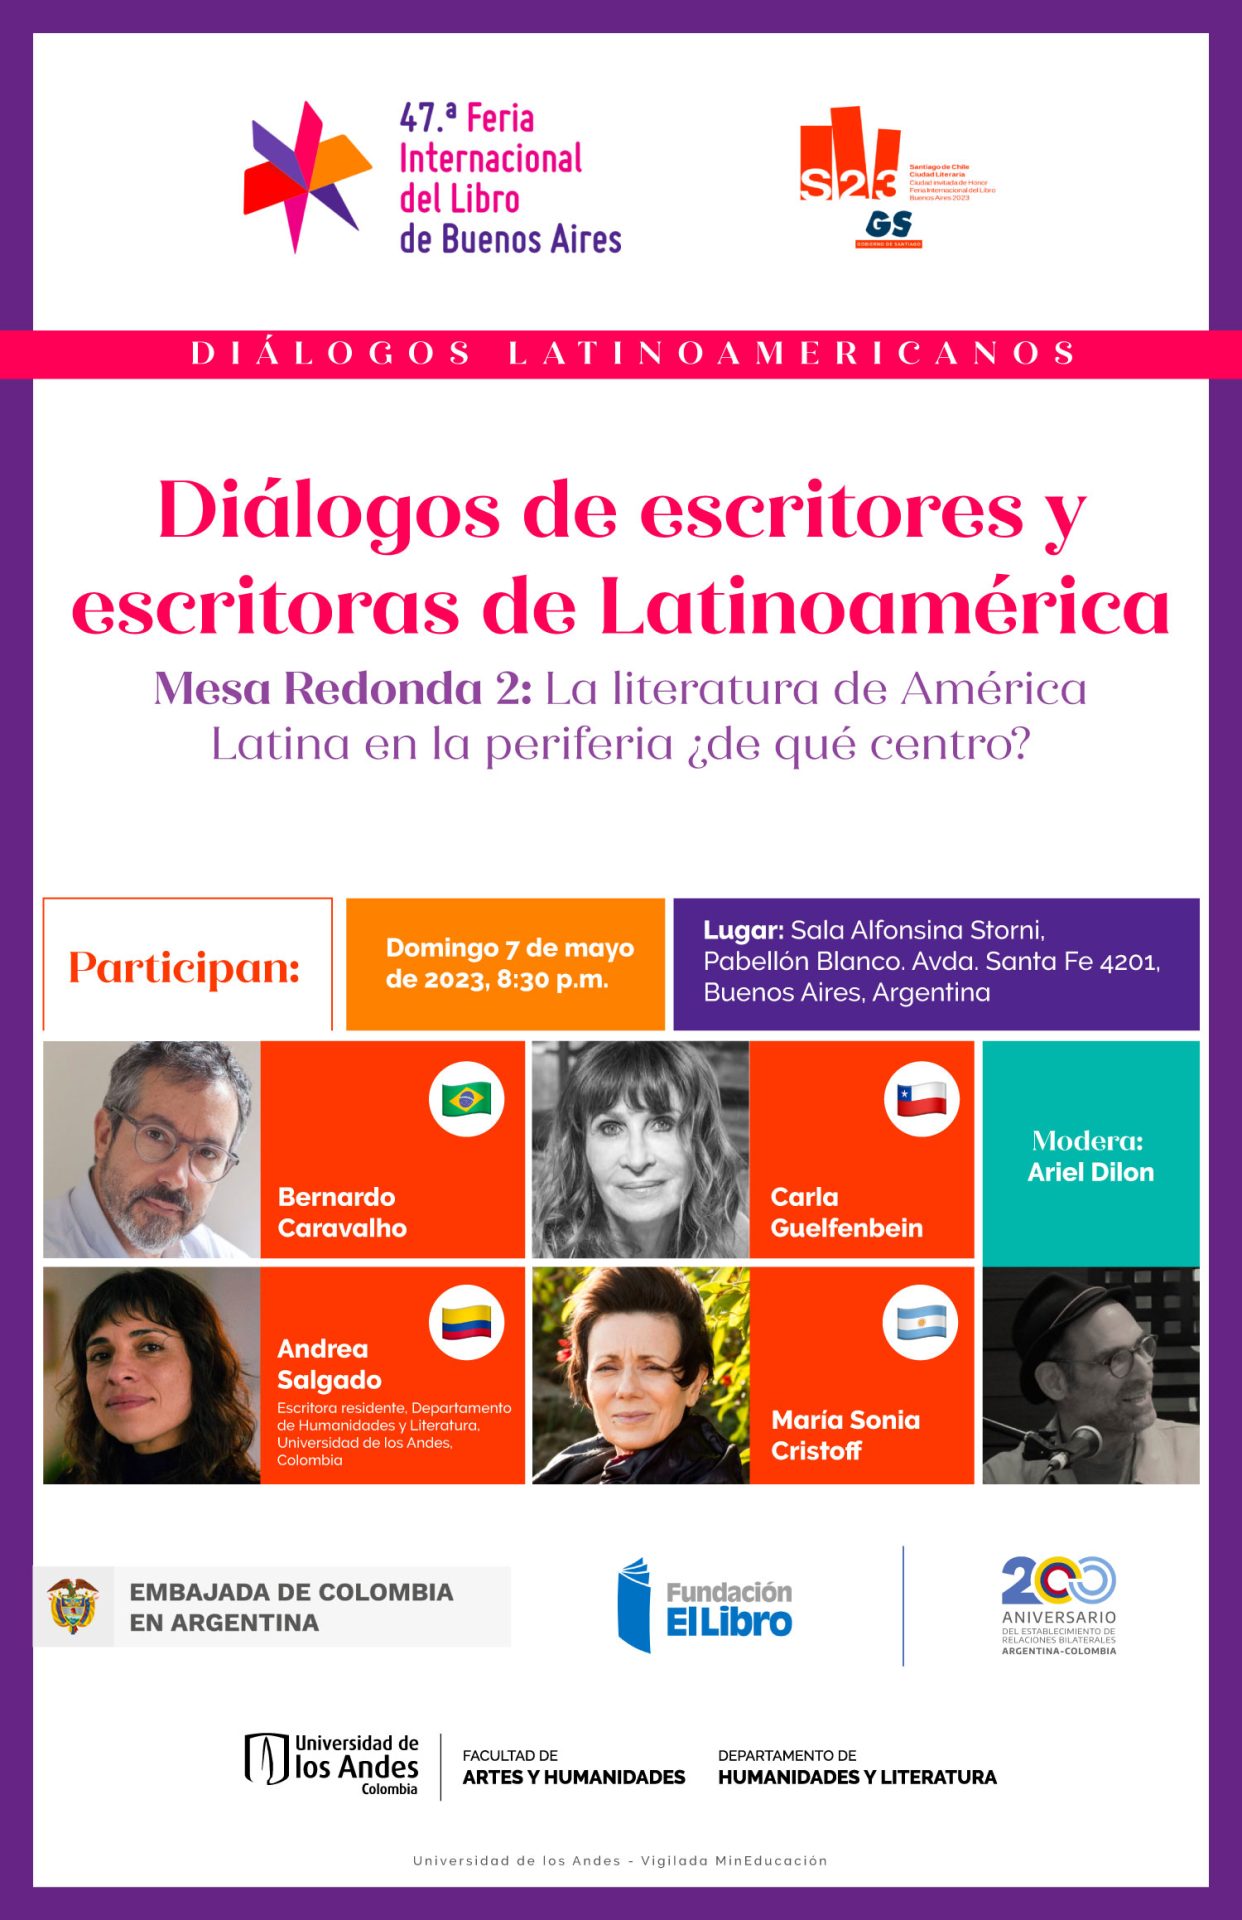 Diálogos de escritores y escritores de Latinoamérica, participa Andrea Salgado, escritora residente, Departamento de Humanidades y Literatura, Universidad de los Andes, Colombia